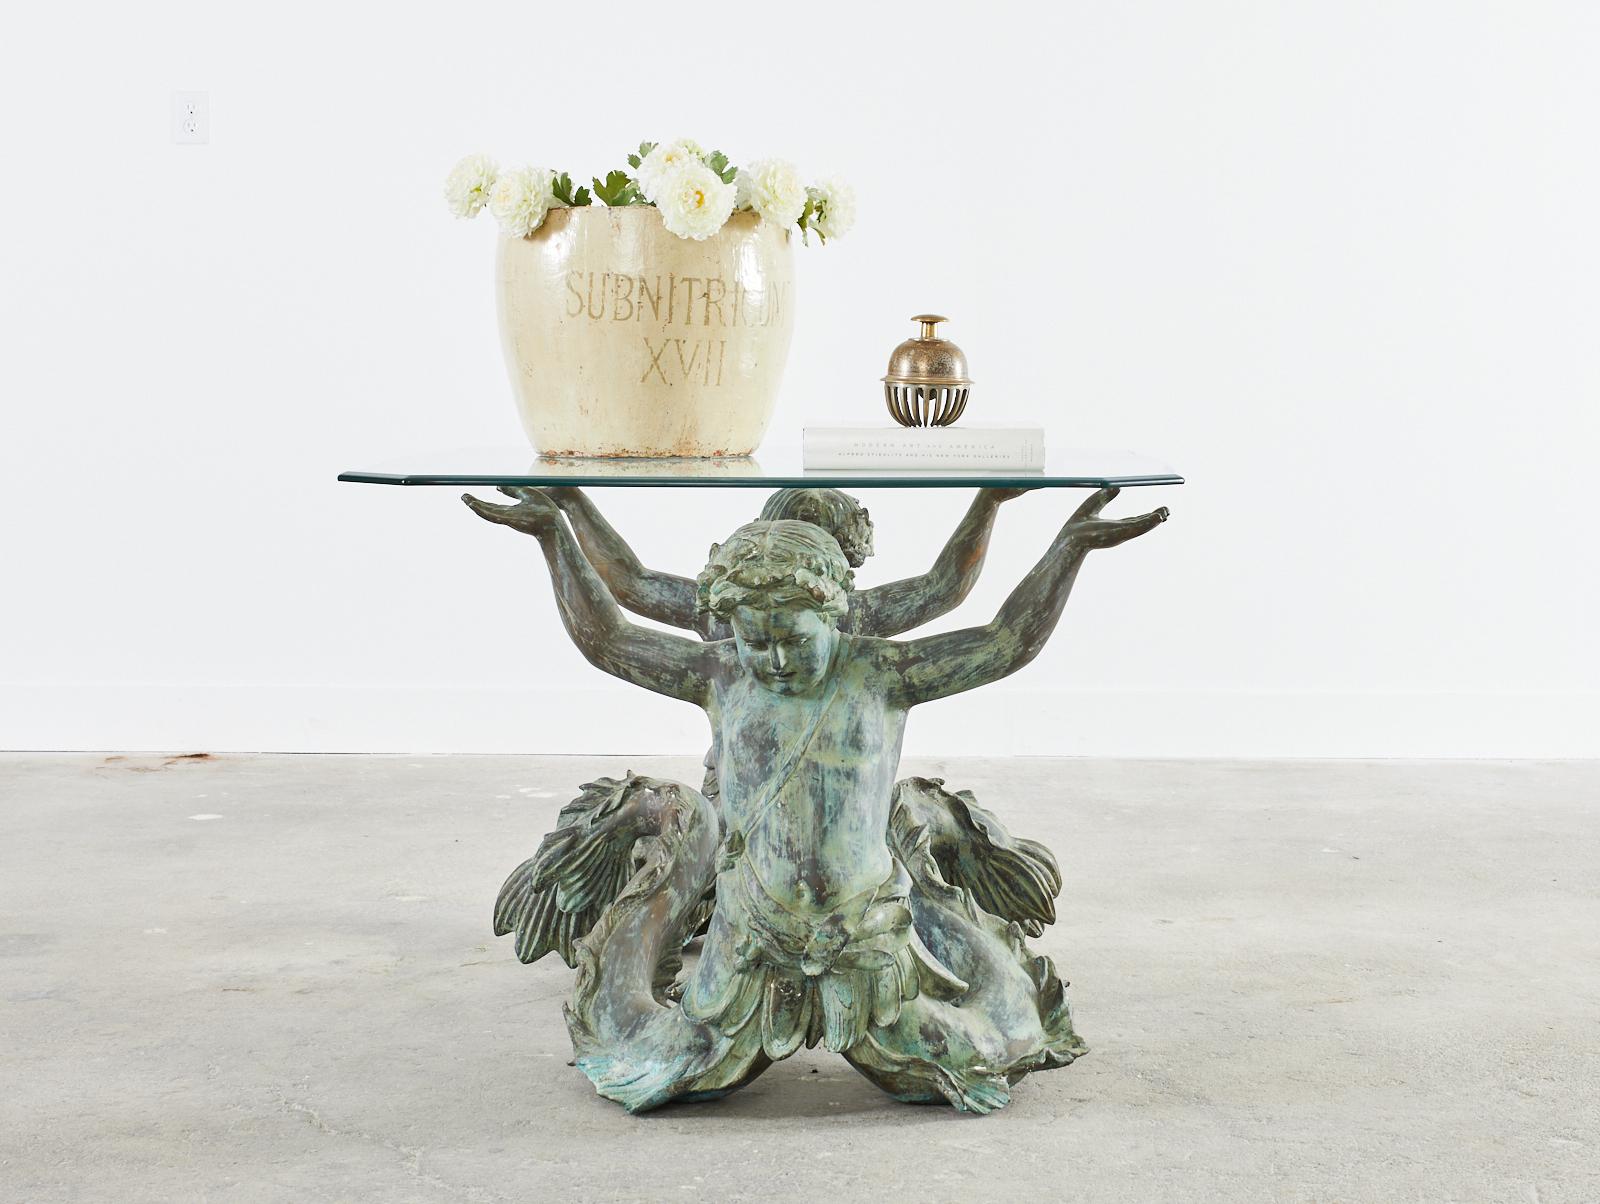 Exceptionnelle table centrale en bronze italien représentant une paire de sirènes ou de putti di mare. Le bronze a une belle finition patinée avec des vert-de-gris. La base seule mesure 45 pouces de large par 30 pouces de profondeur et représente